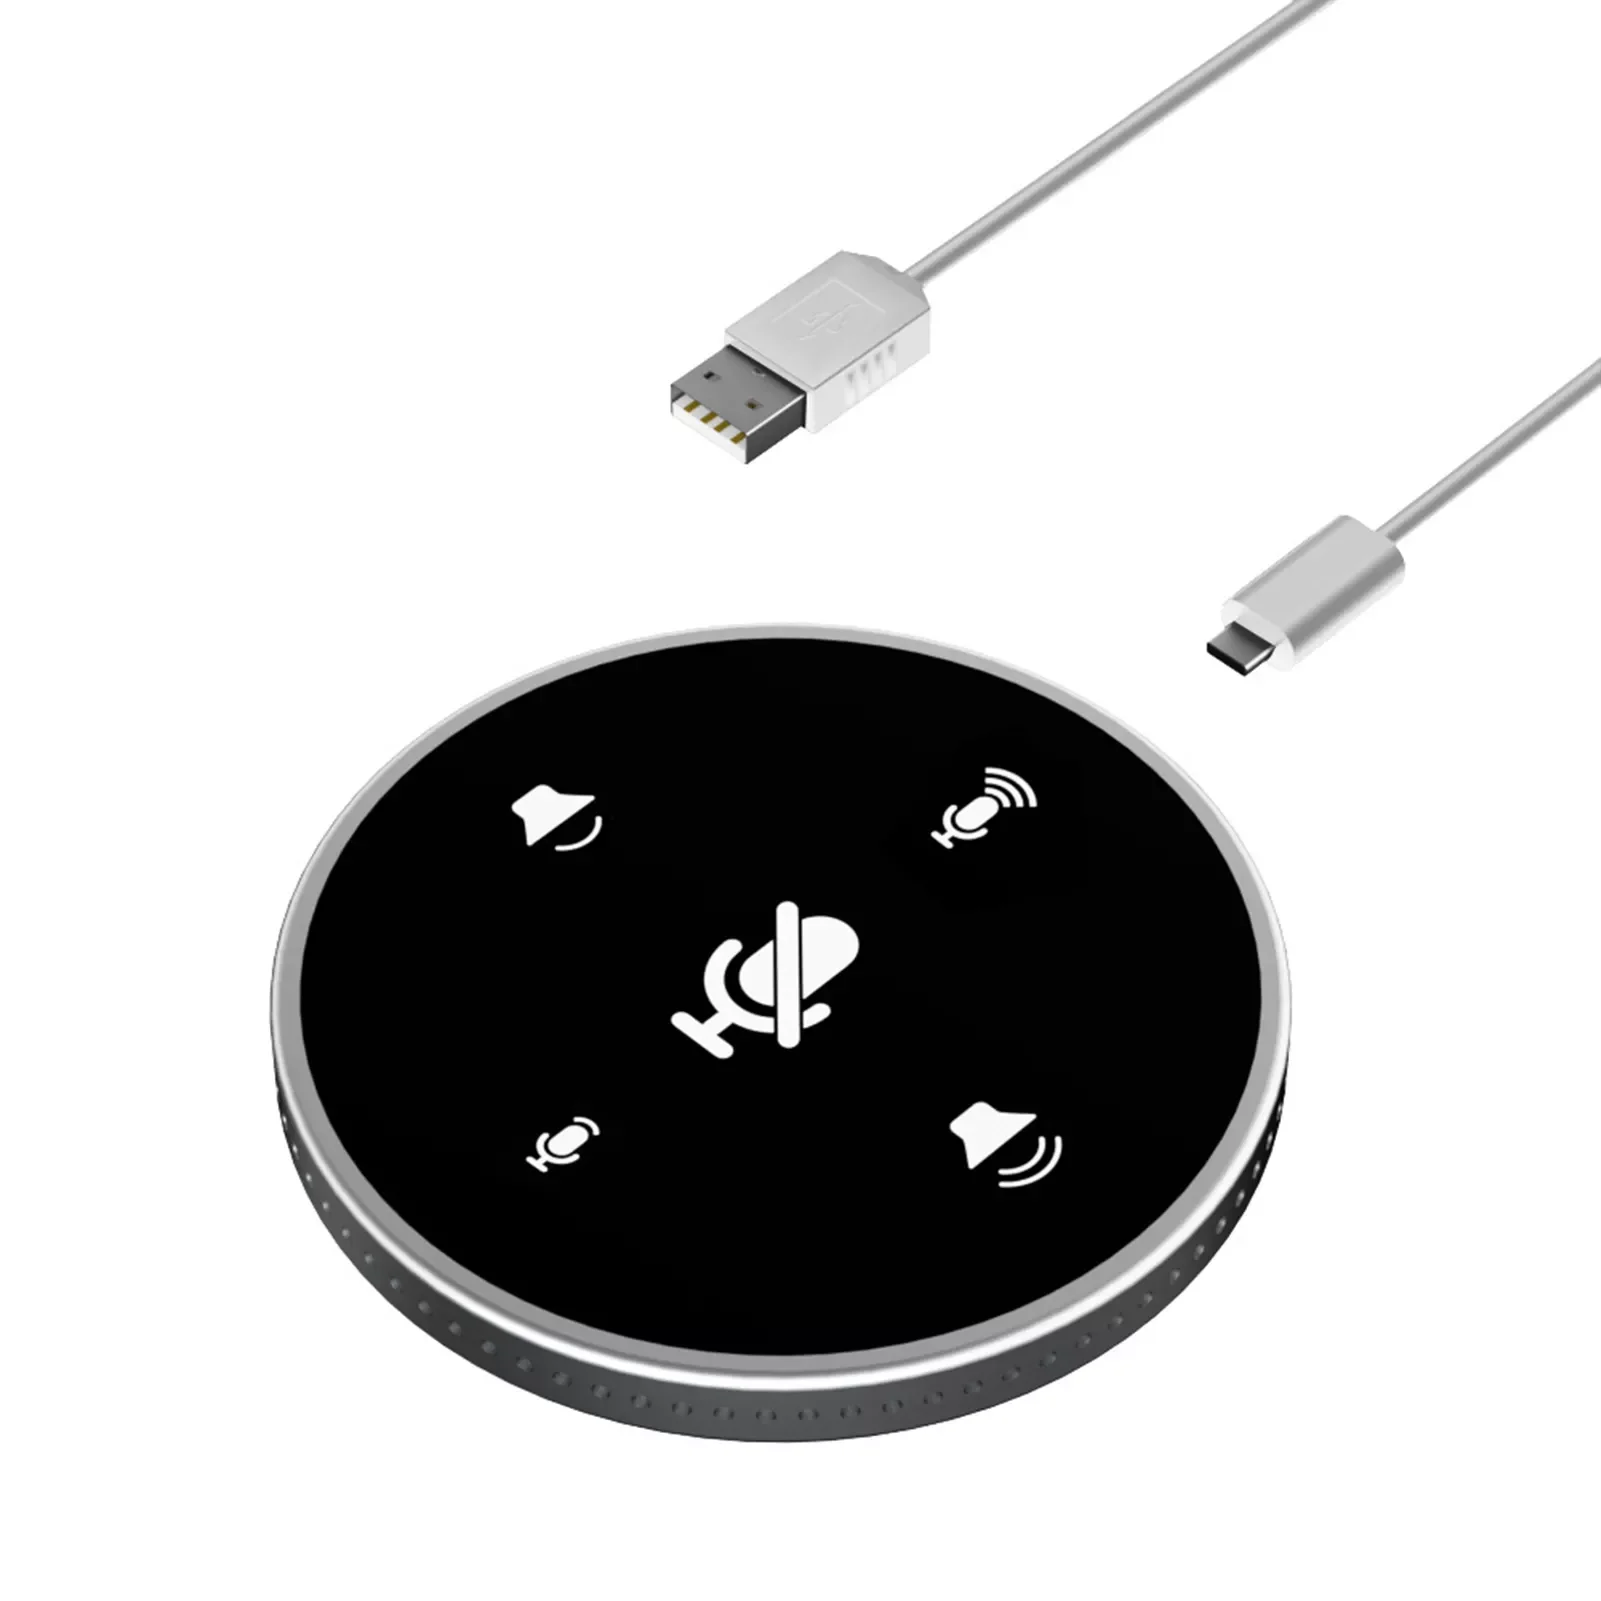 

Настольный USB-динамик для телефонной связи, микрофон, Built-in динамик, динамик 360 °, всенаправленный конденсаторный микрофон для ПК, ноутбука